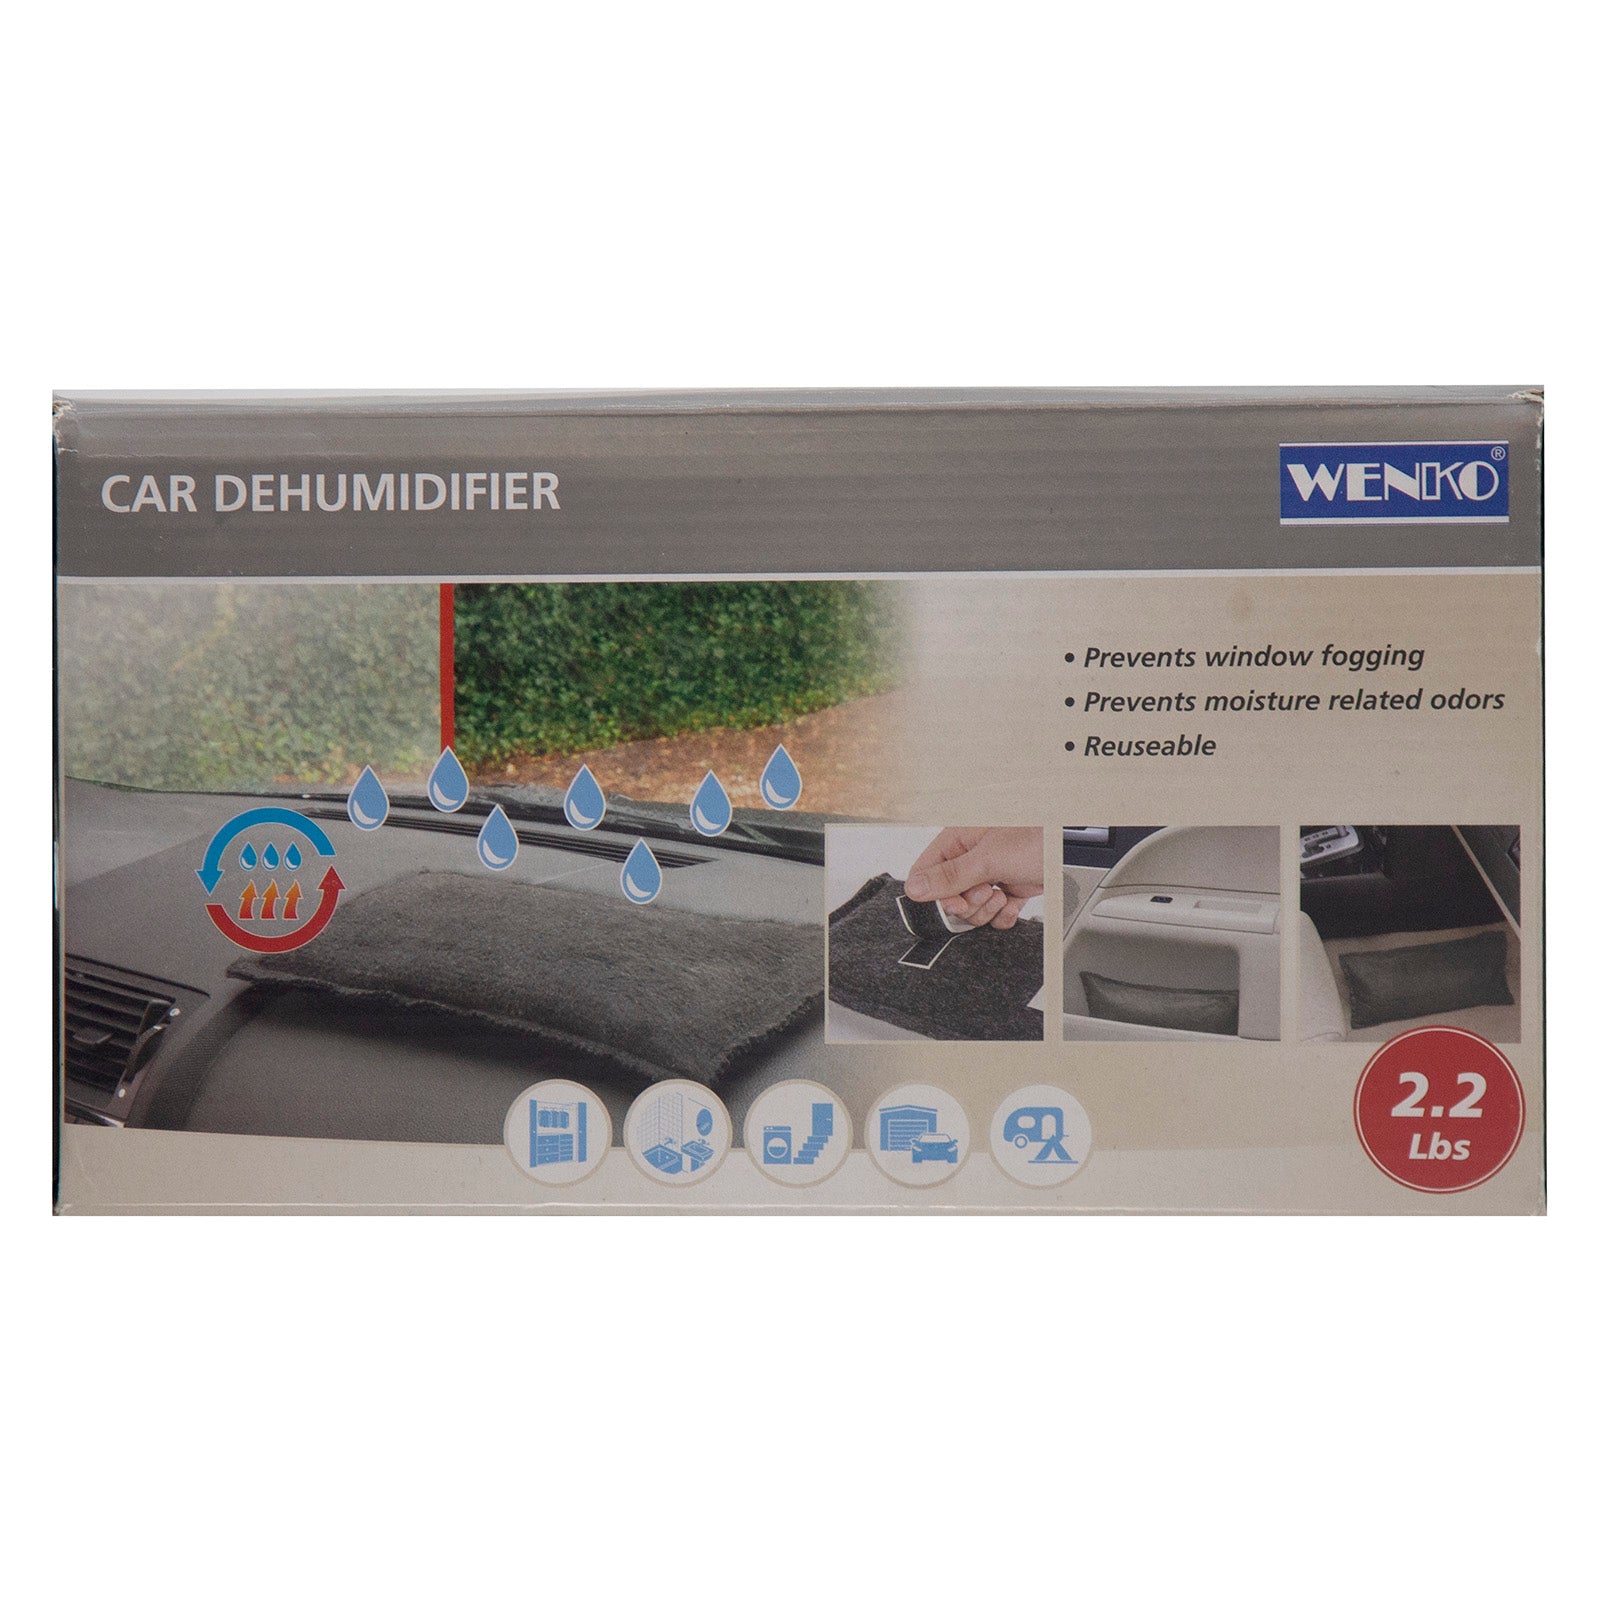 Wenko Car Dehumidifier 2.2 lbs Grade A